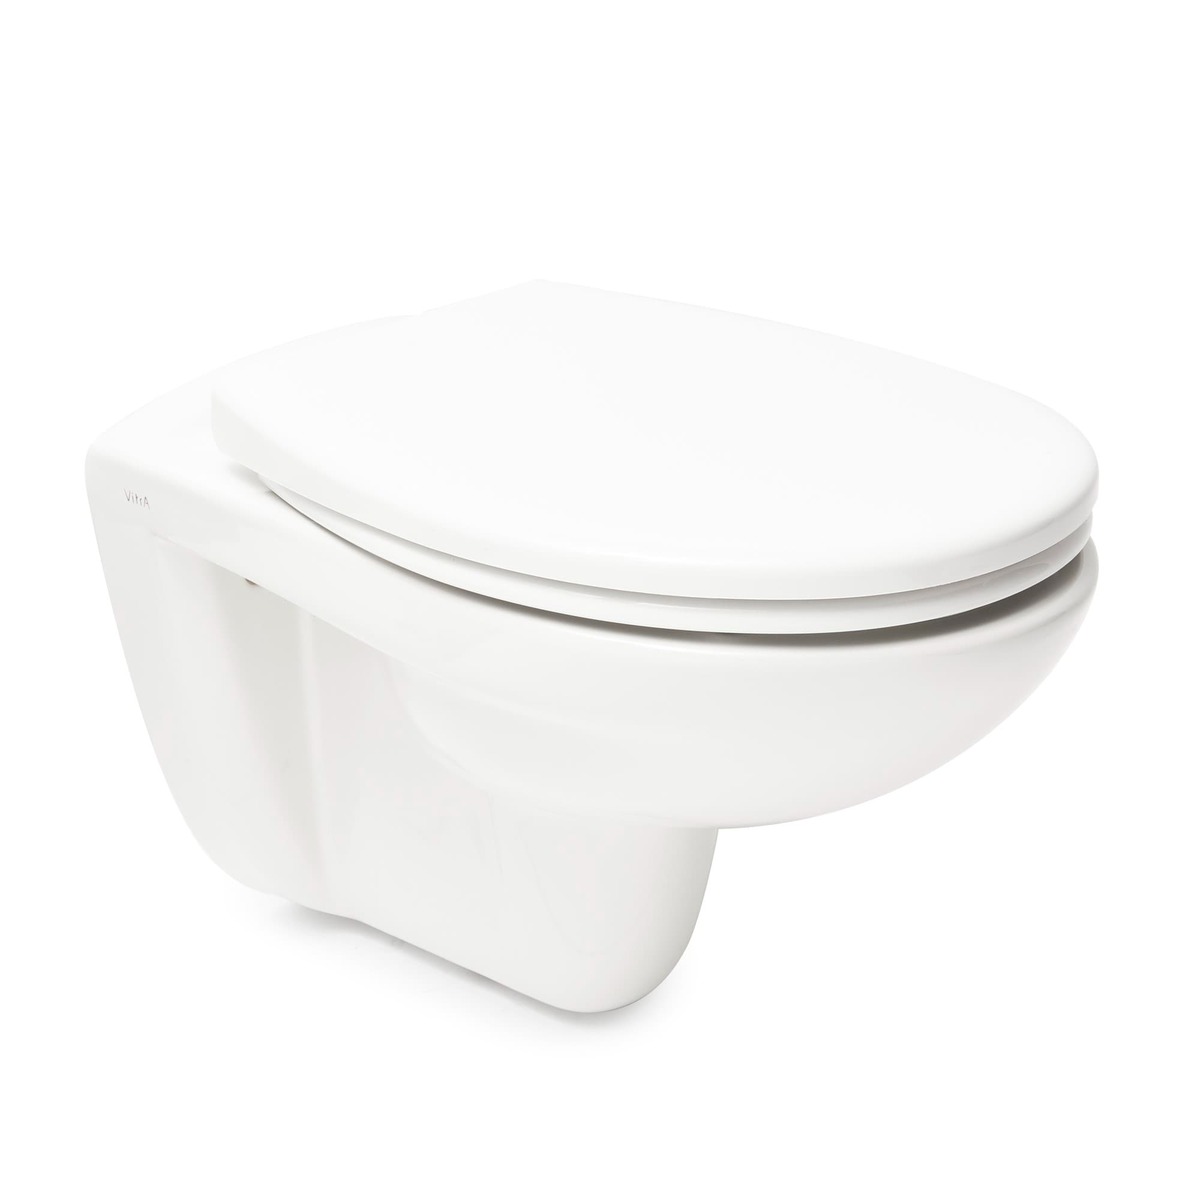 WC závěsné Vitra Normus včetně sedátka soft close zadní odpad 7855-003-6169 Vitra